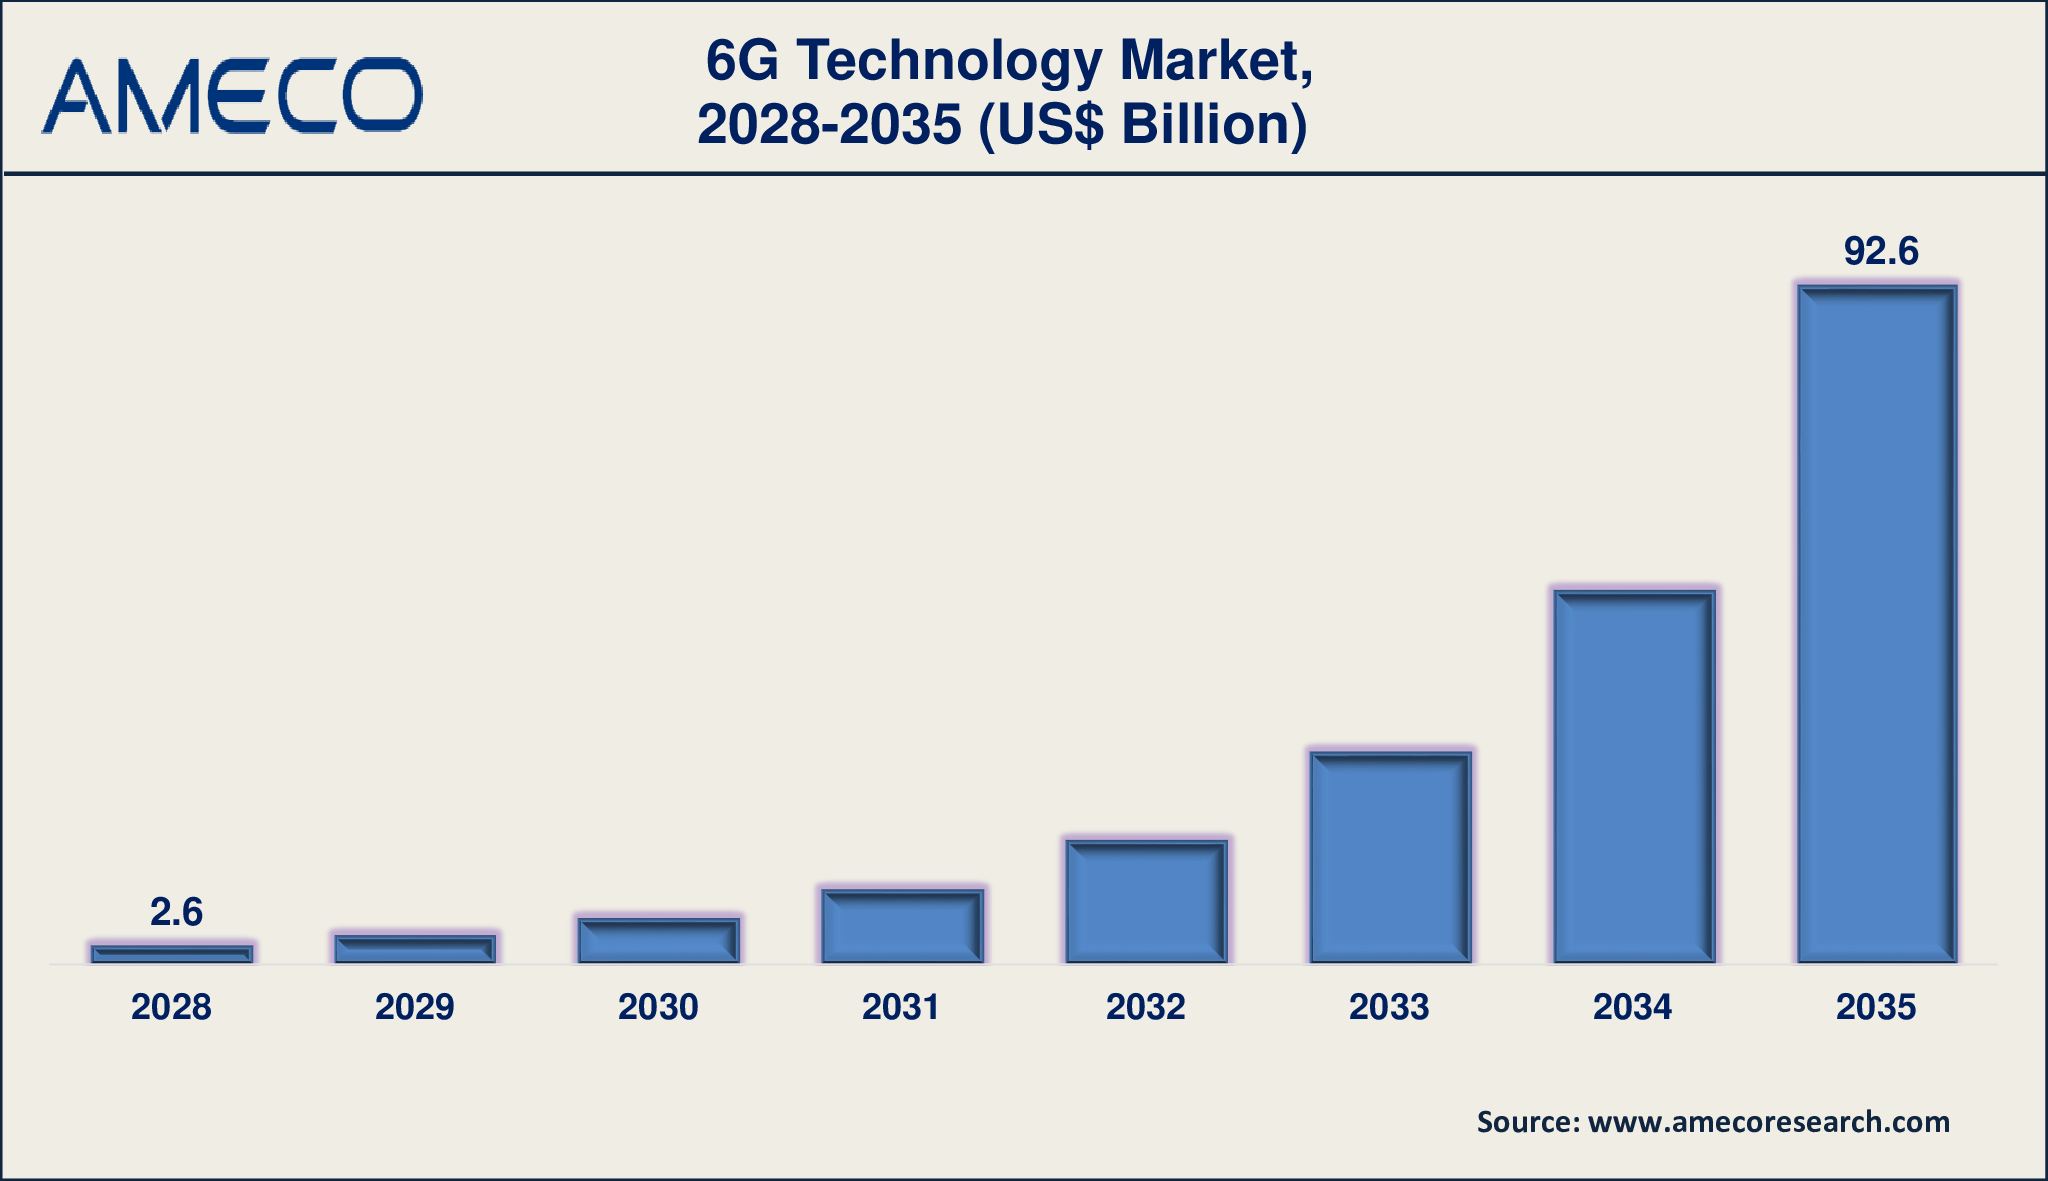 6G Technology Market Dynamics